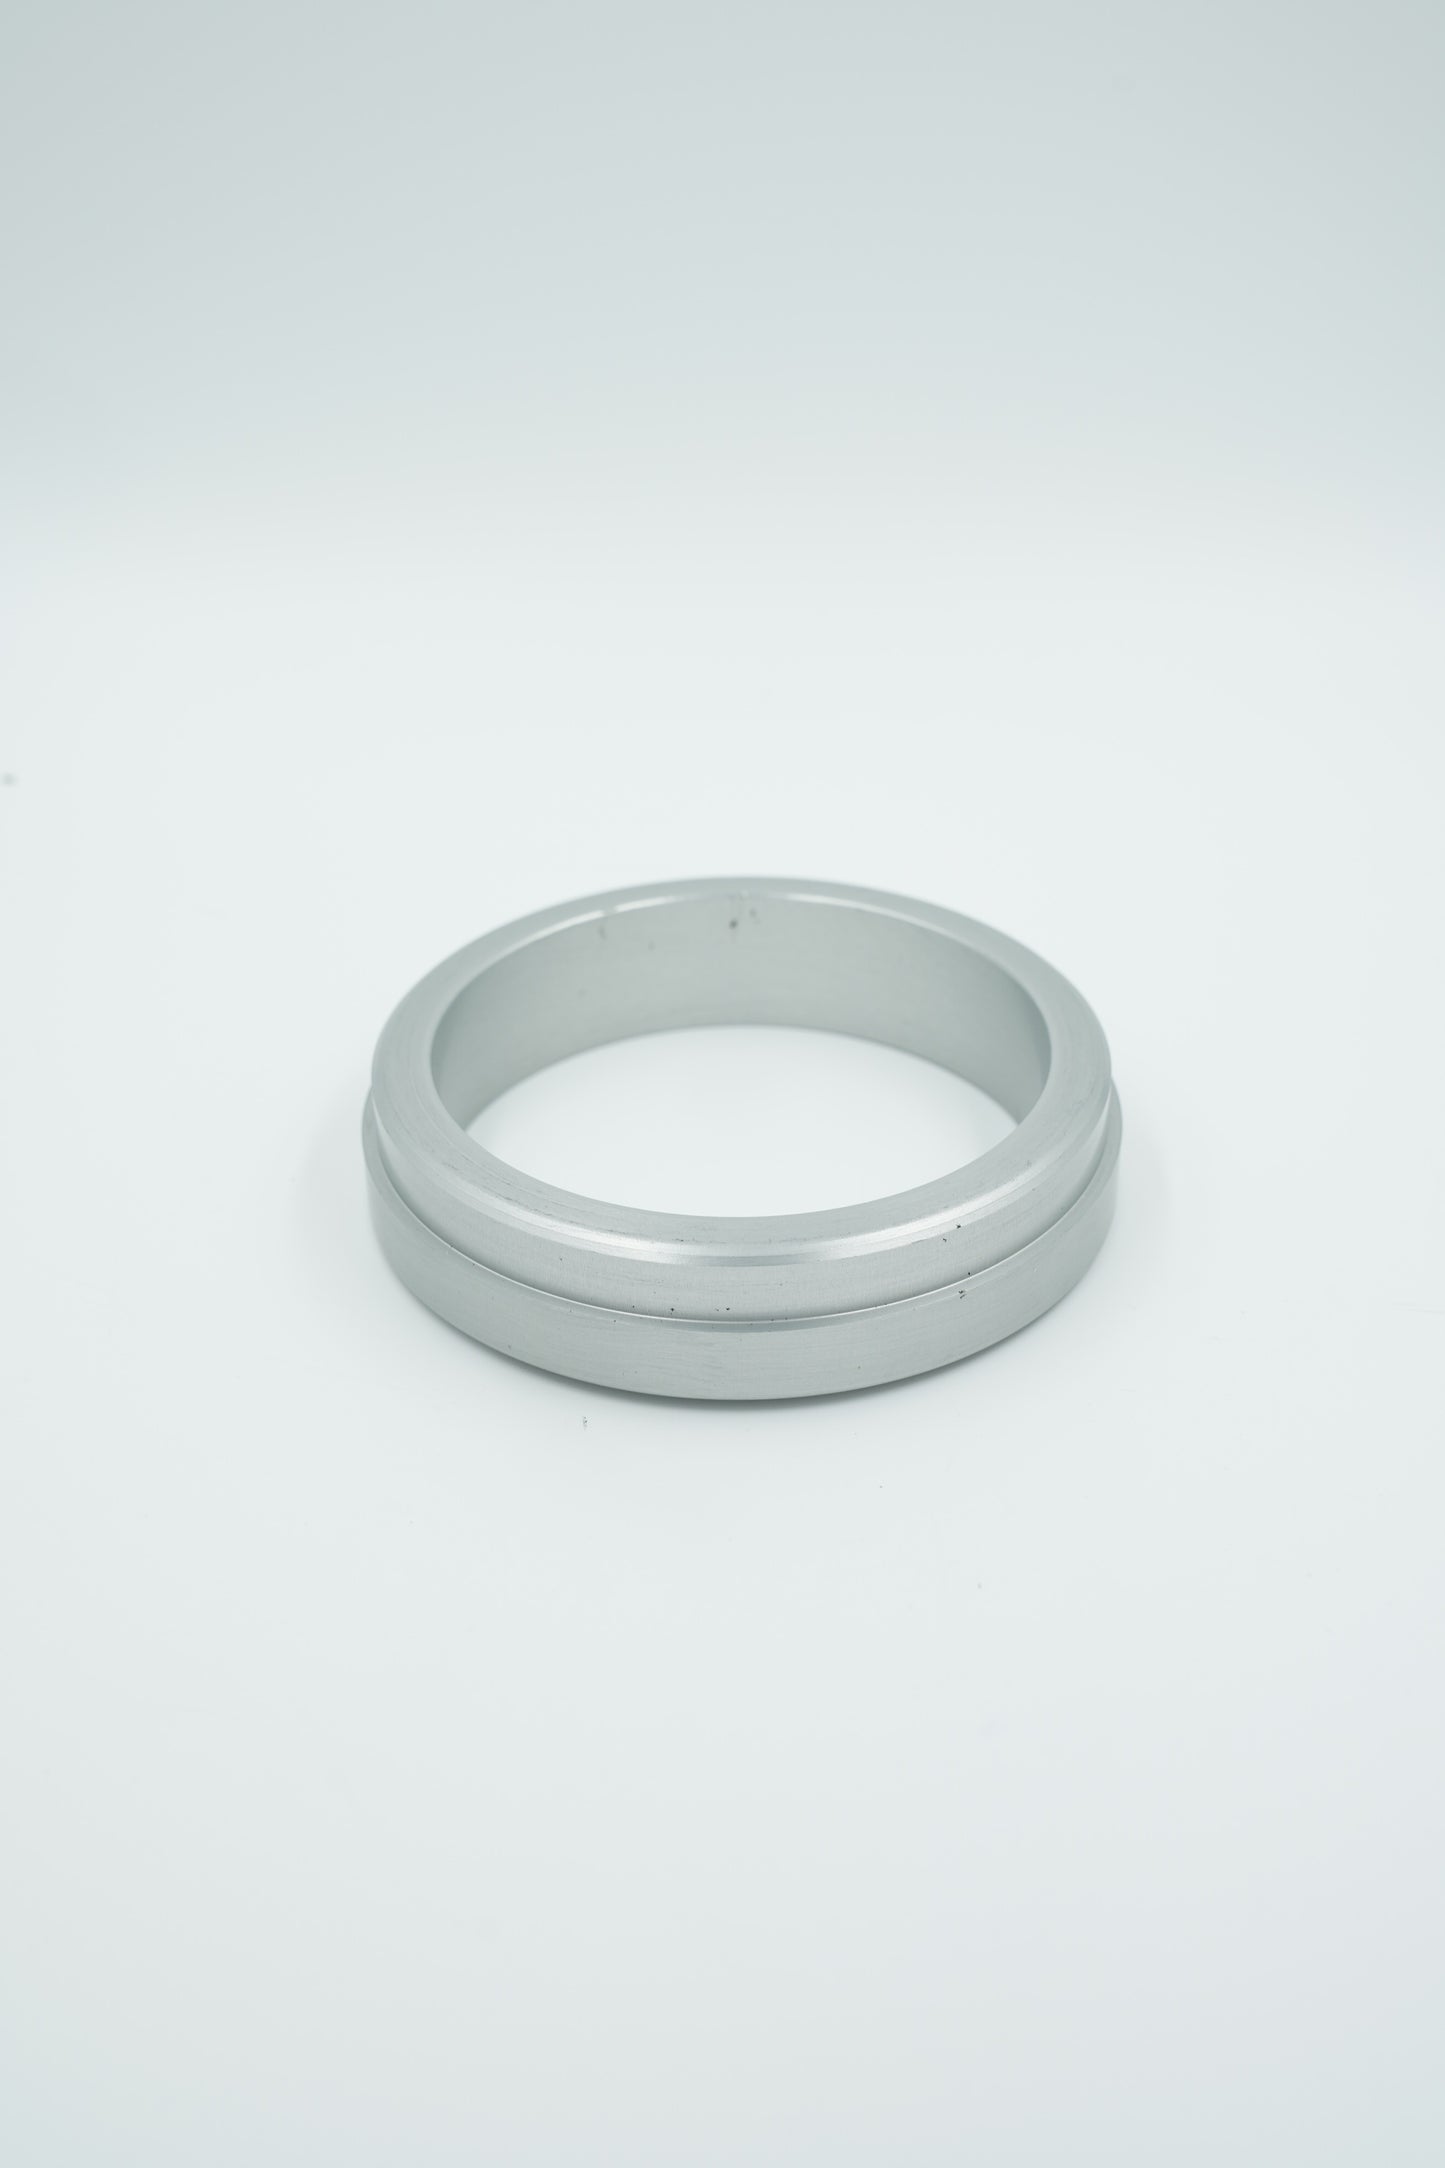 Aluminium ring for rudder stock for J/109